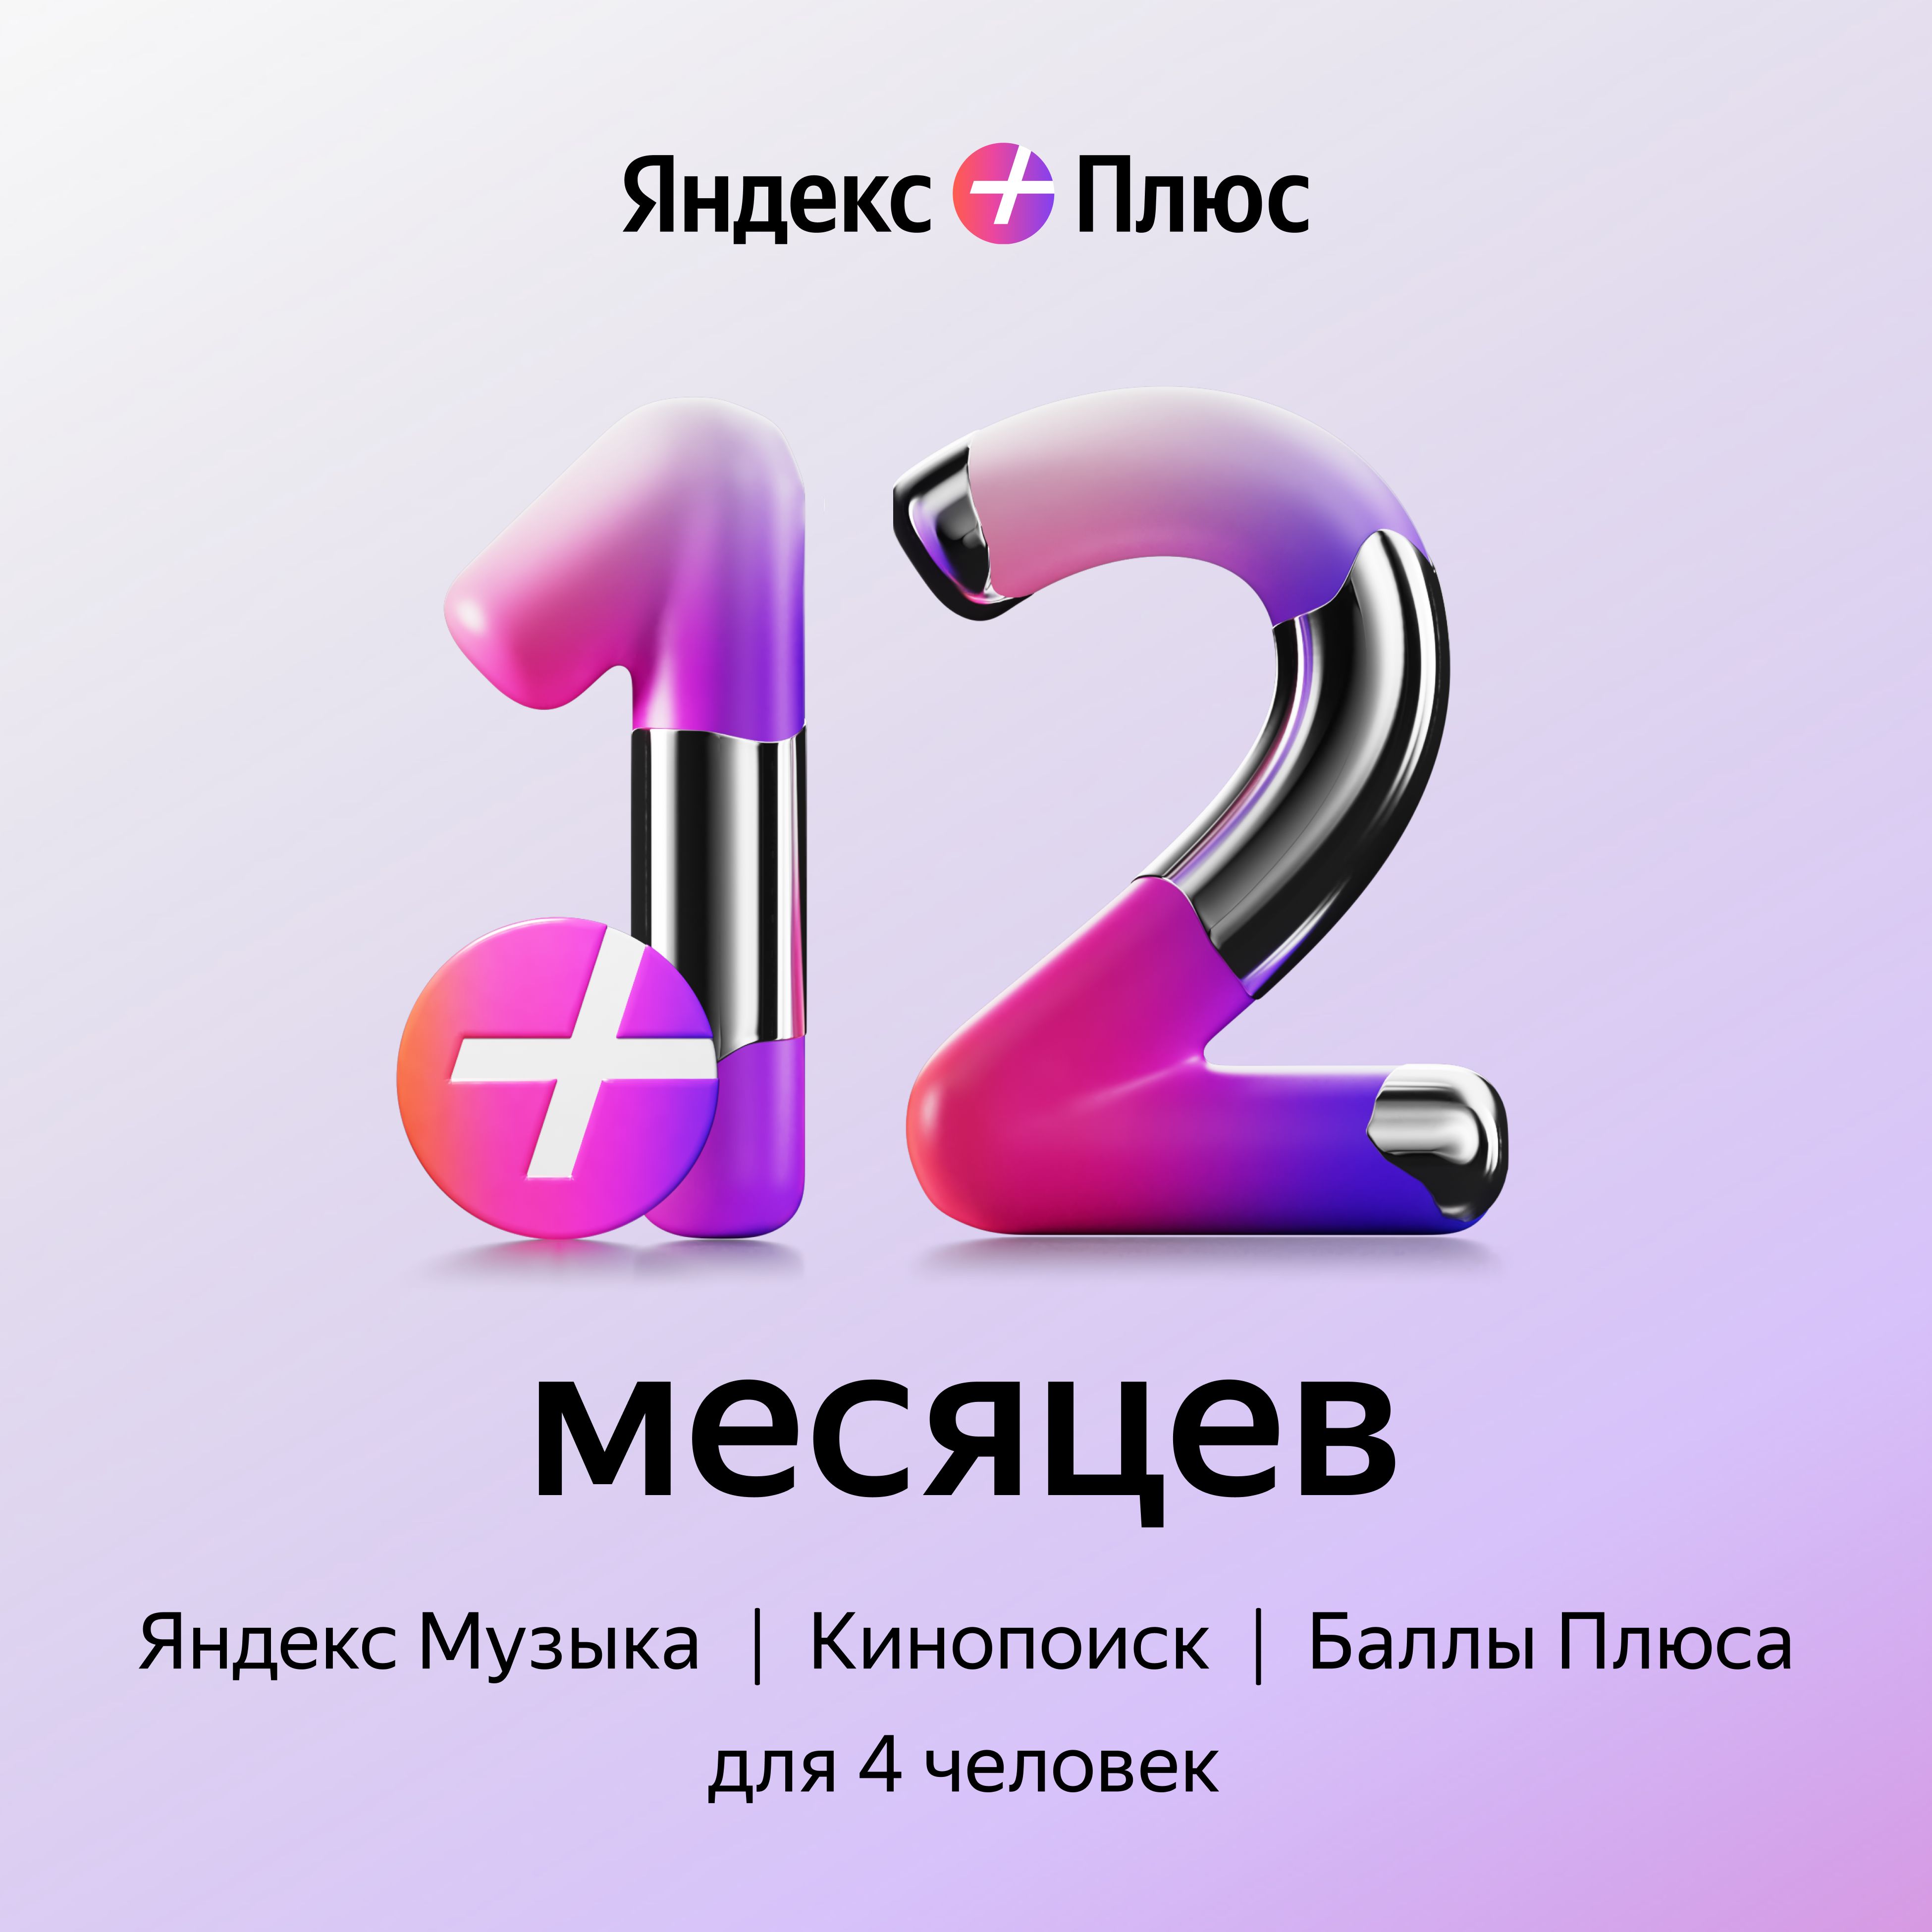 Подписка Яндекс Плюс (12 месяцев)